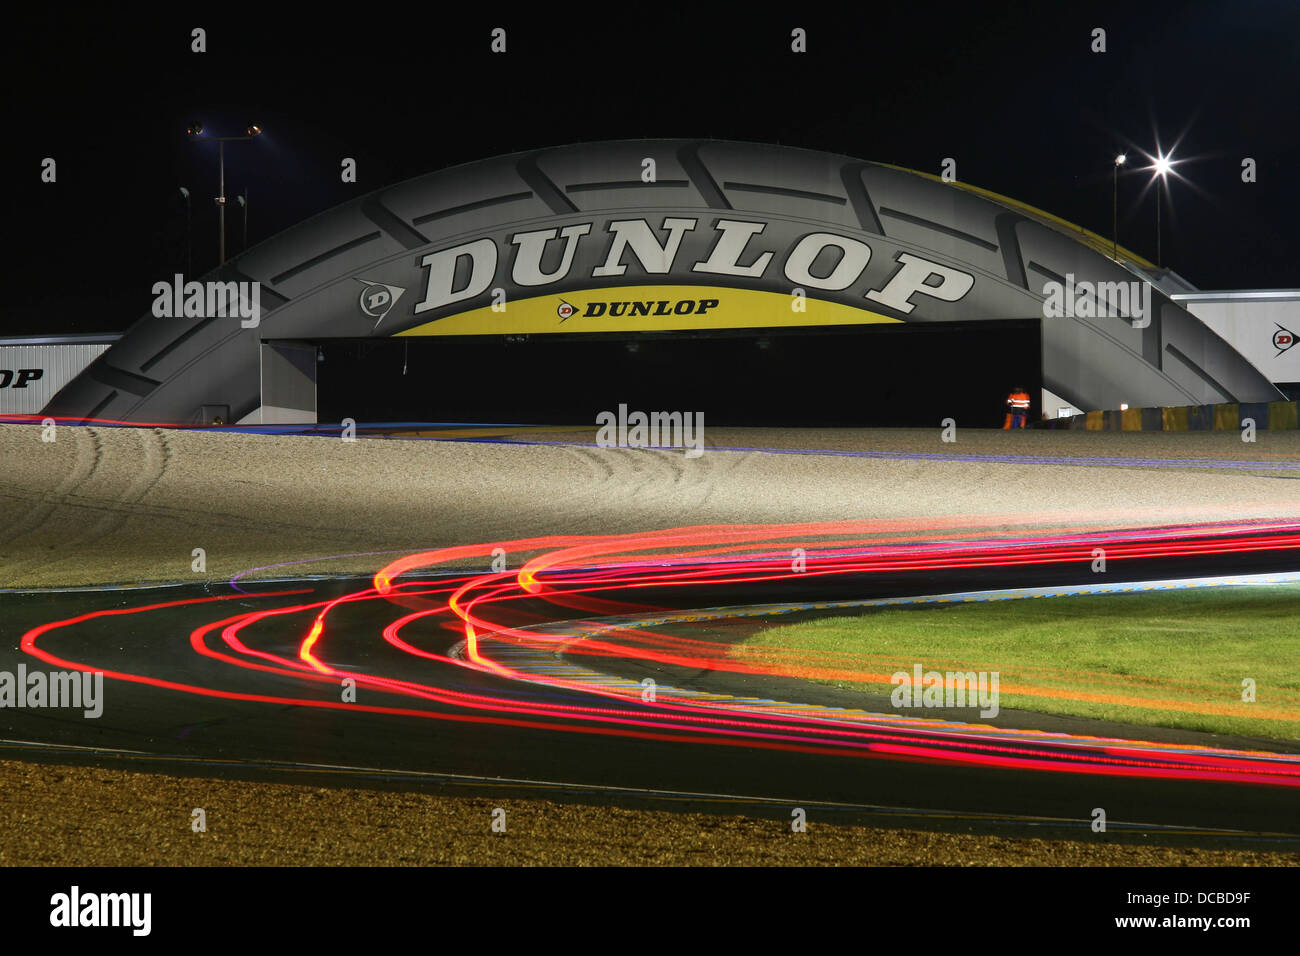 Escena nocturna en el puente Dunlop, 2013 24 Horas de Le Mans. Foto de stock